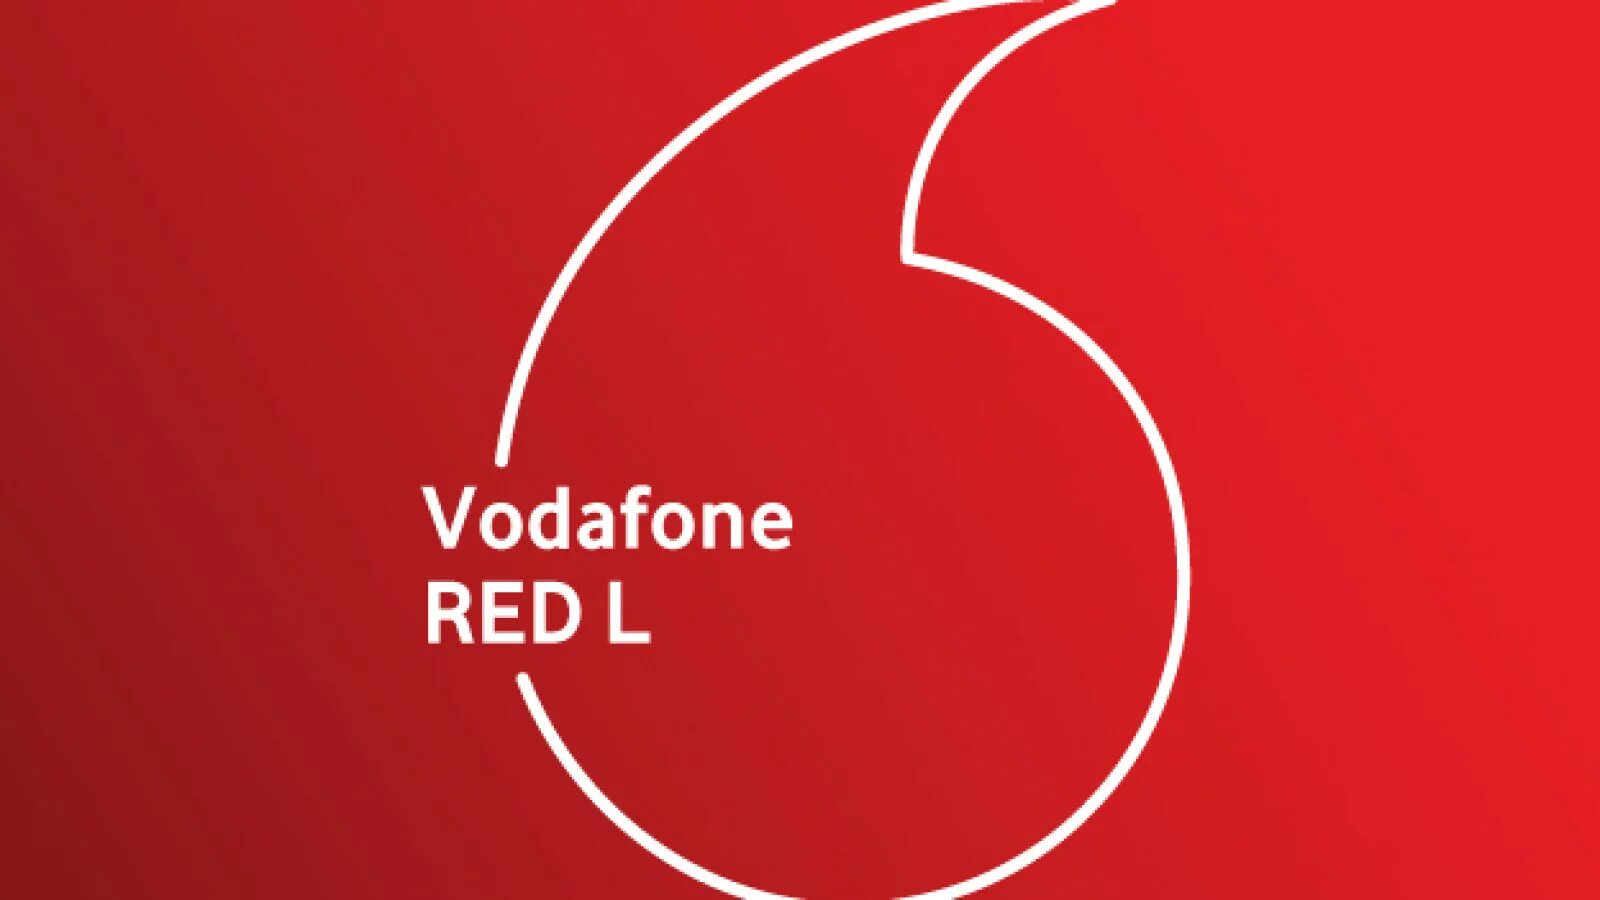 Ред м. Красная Водафон. МТС Украина 2019. Ростехнологии Vodafone. Vodafone rozapping 2021.